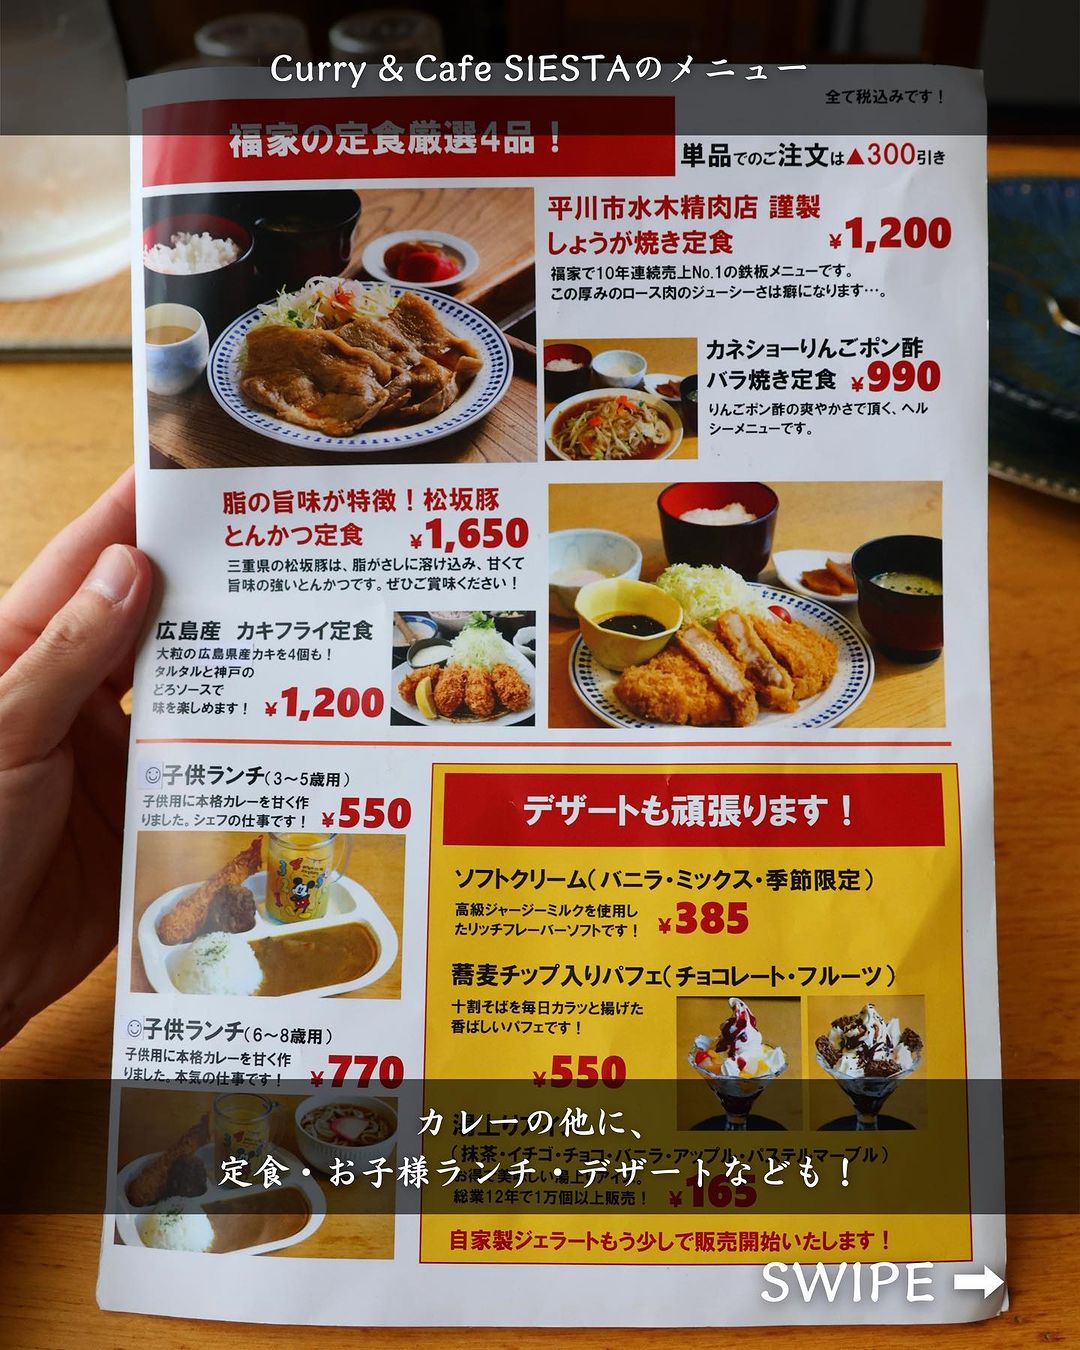 【平川市・Curry & Cafe SIESTA】メニュー